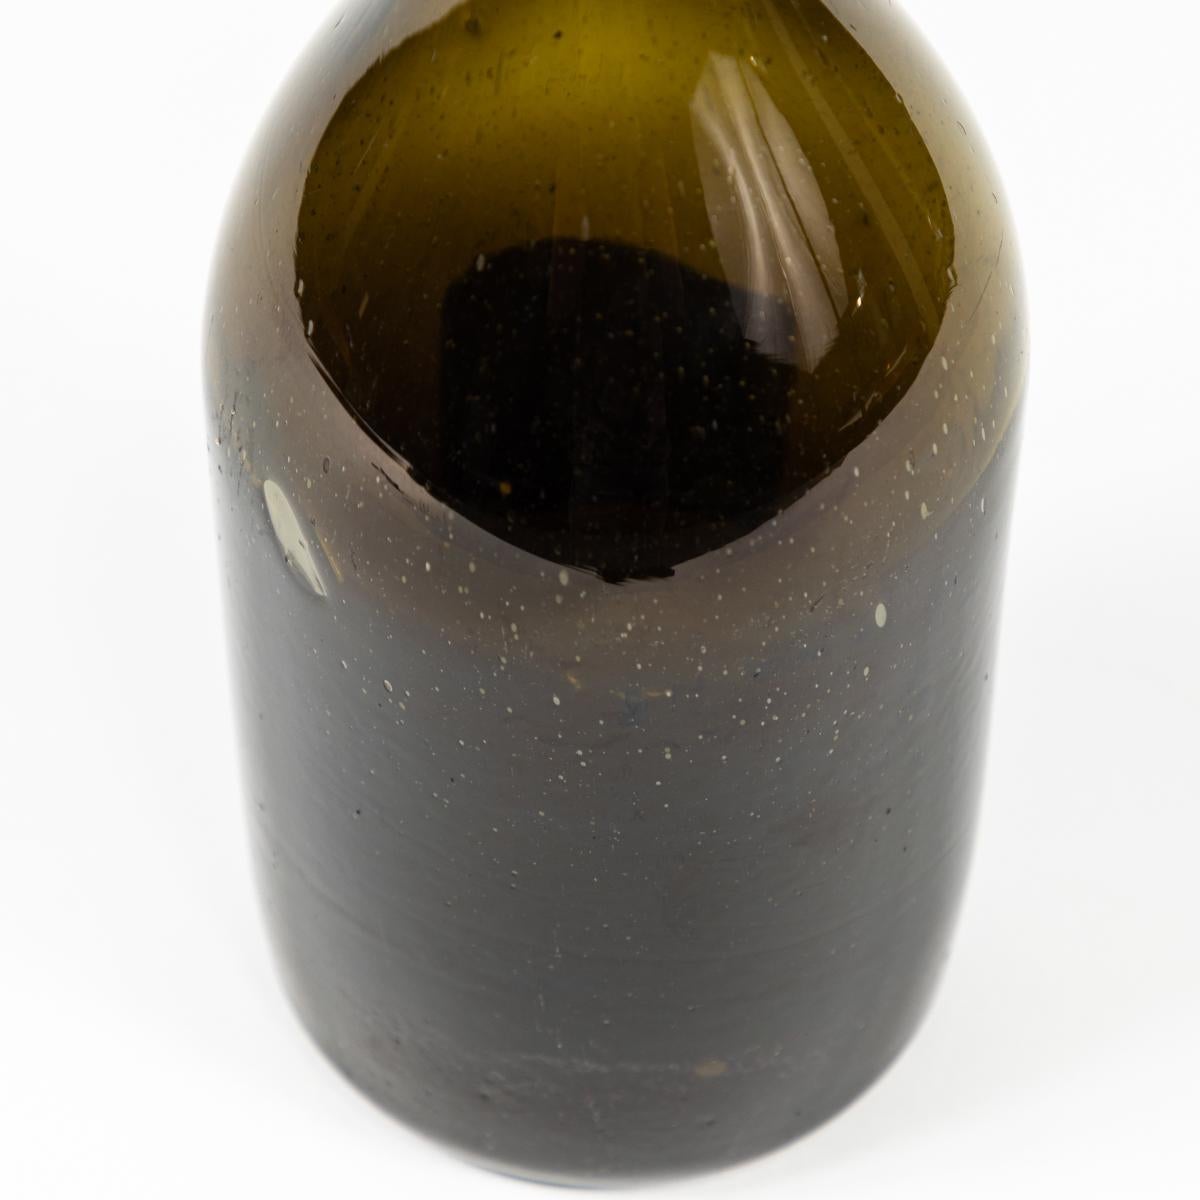 Bouteille en verre soufflé à la main du 19e siècle dans une belle teinte olive profonde. Rustique et artisanal, cet objet polyvalent peut être utilisé de multiples façons - comme carafe, comme vase, ou associé à d'autres bouteilles pour donner de la